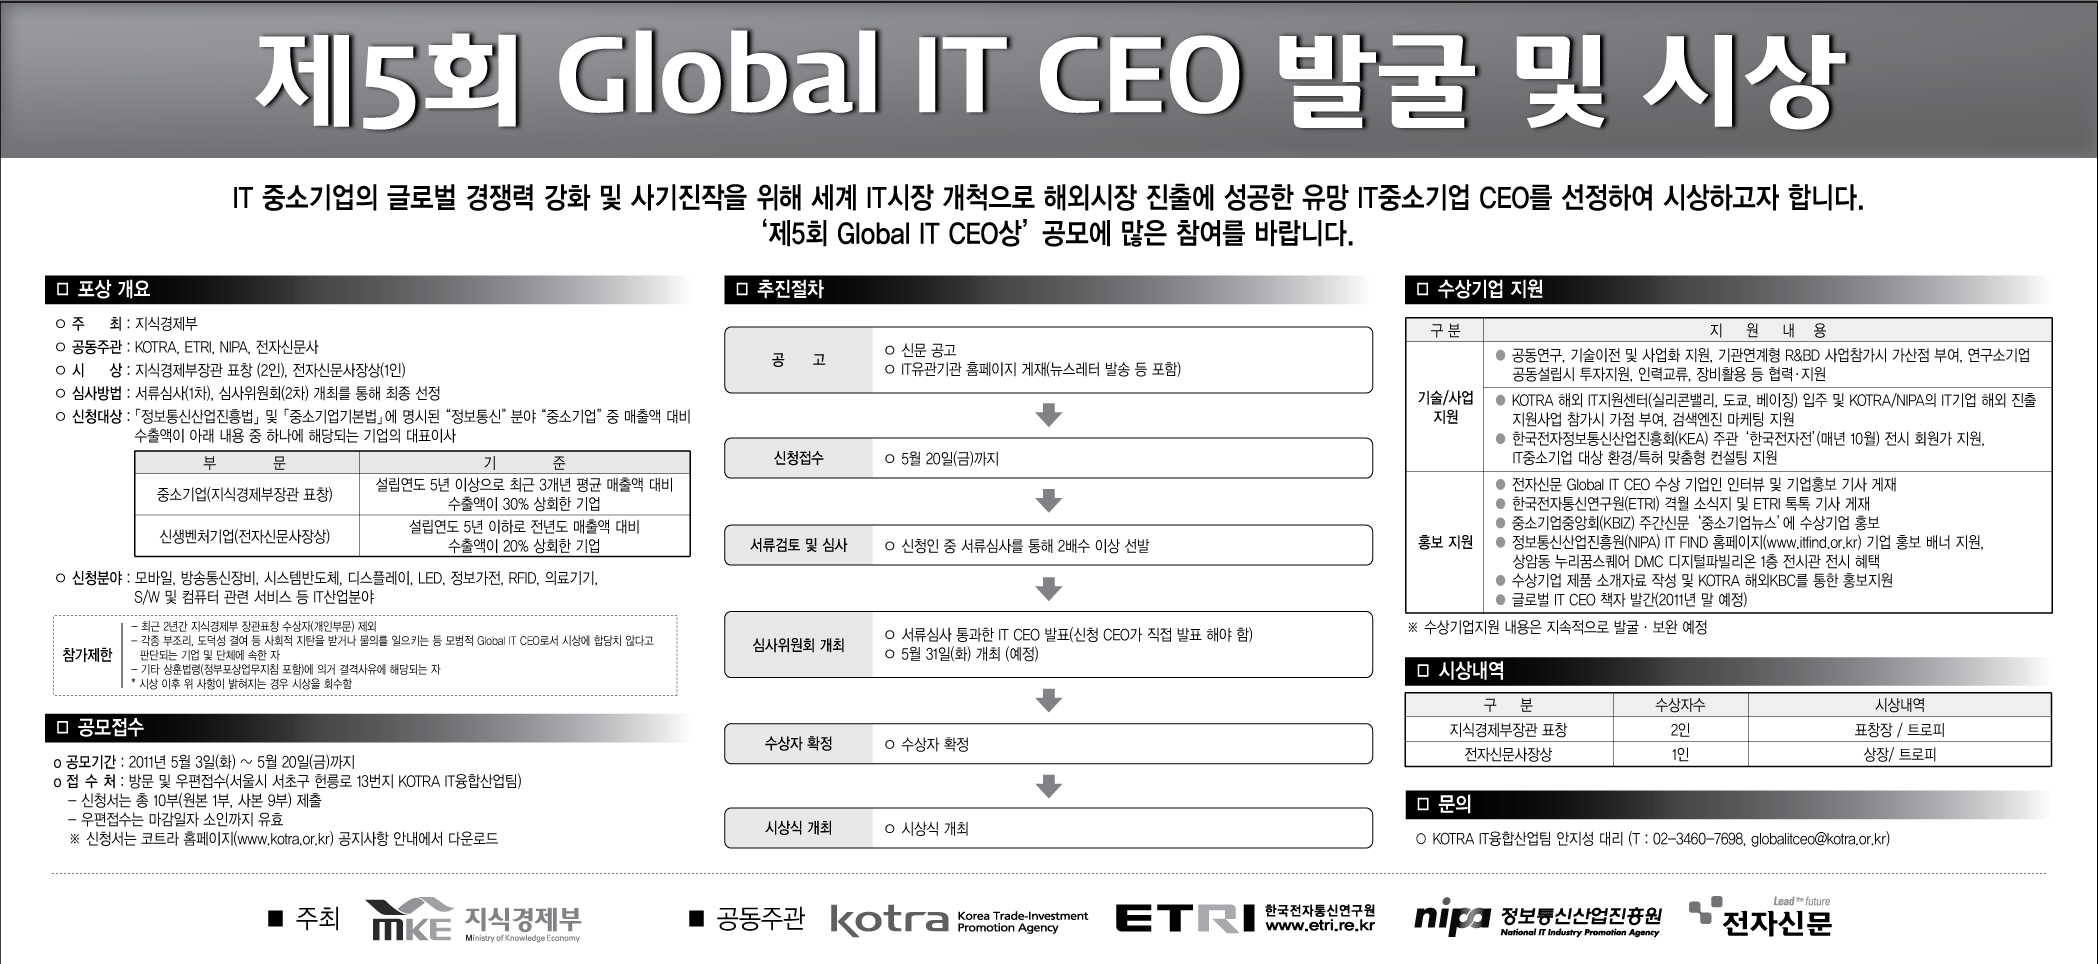 제5회 Global IT CEO 발굴 및 시상 [이미지]